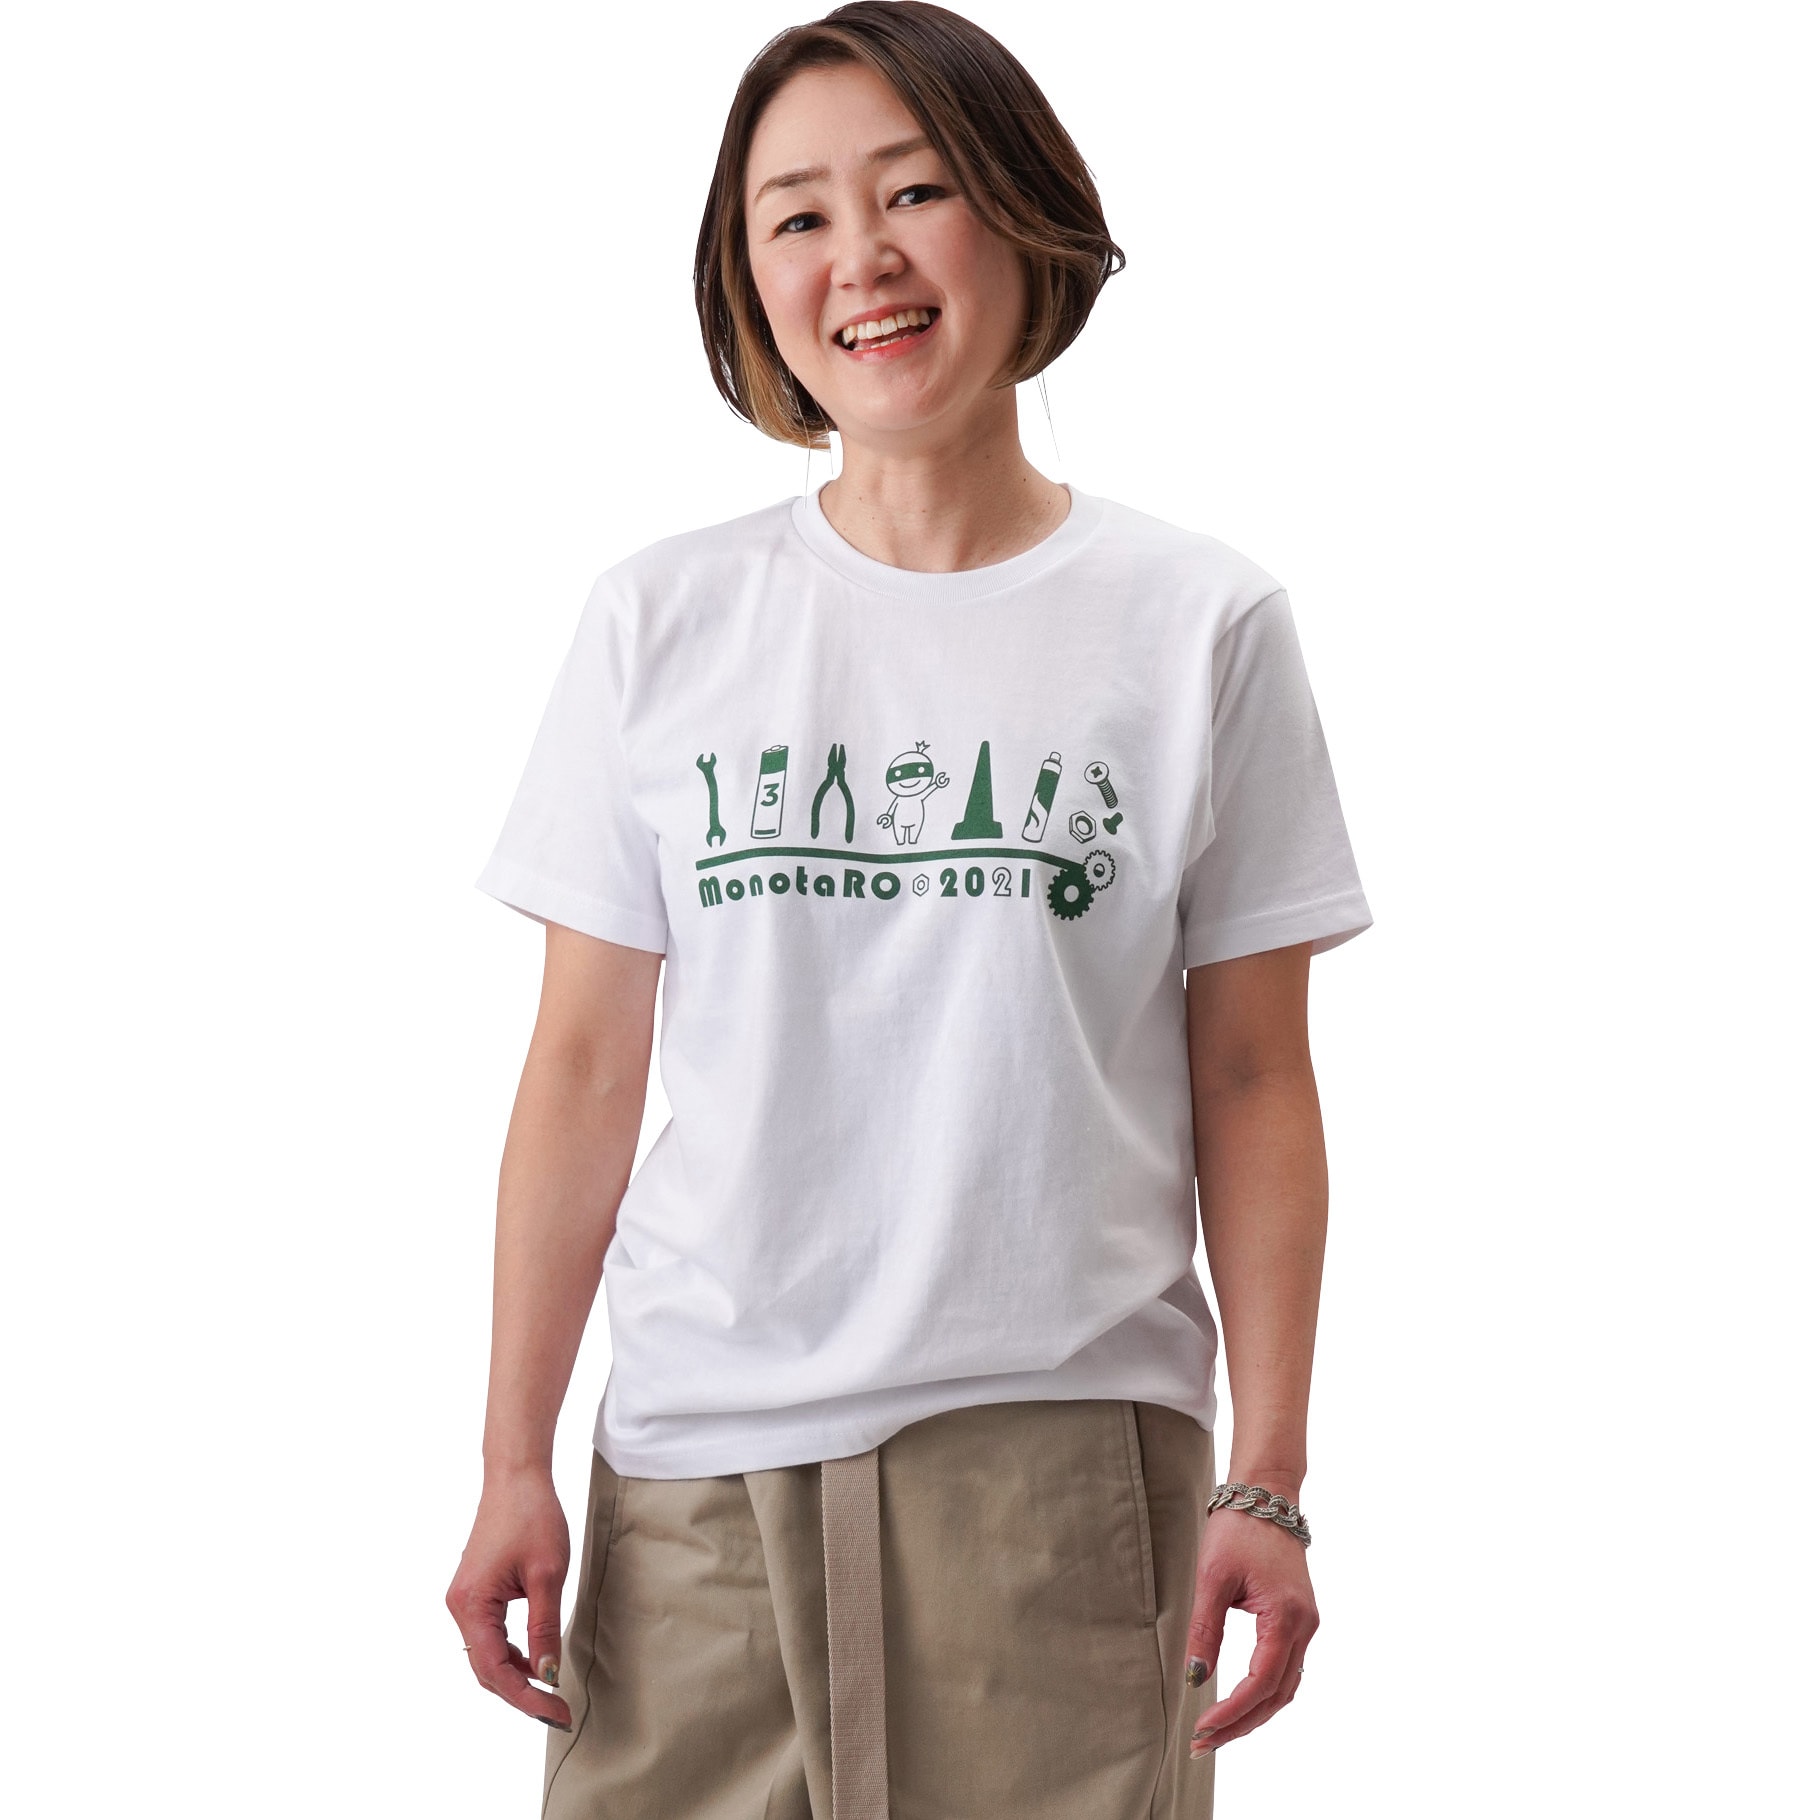 モノタロウ Tシャツ 2021 1枚 モノタロウ. 【通販サイトMonotaRO】